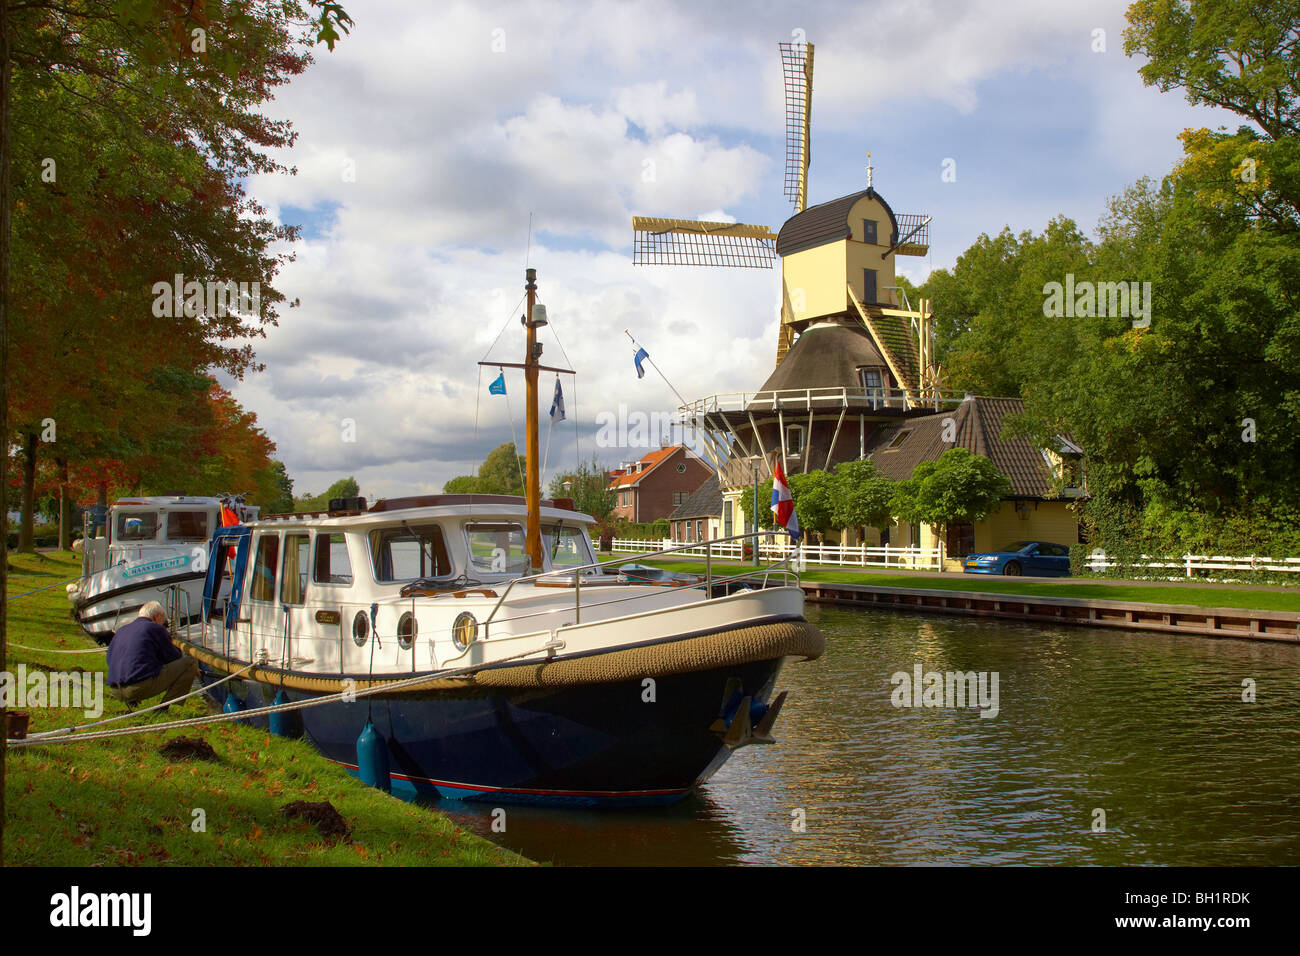 Il mulino a vento e houseboat a teh rive del fiume Smal Weesp sotto il cielo nuvoloso, Weesp, Paesi Bassi, Europa Foto Stock